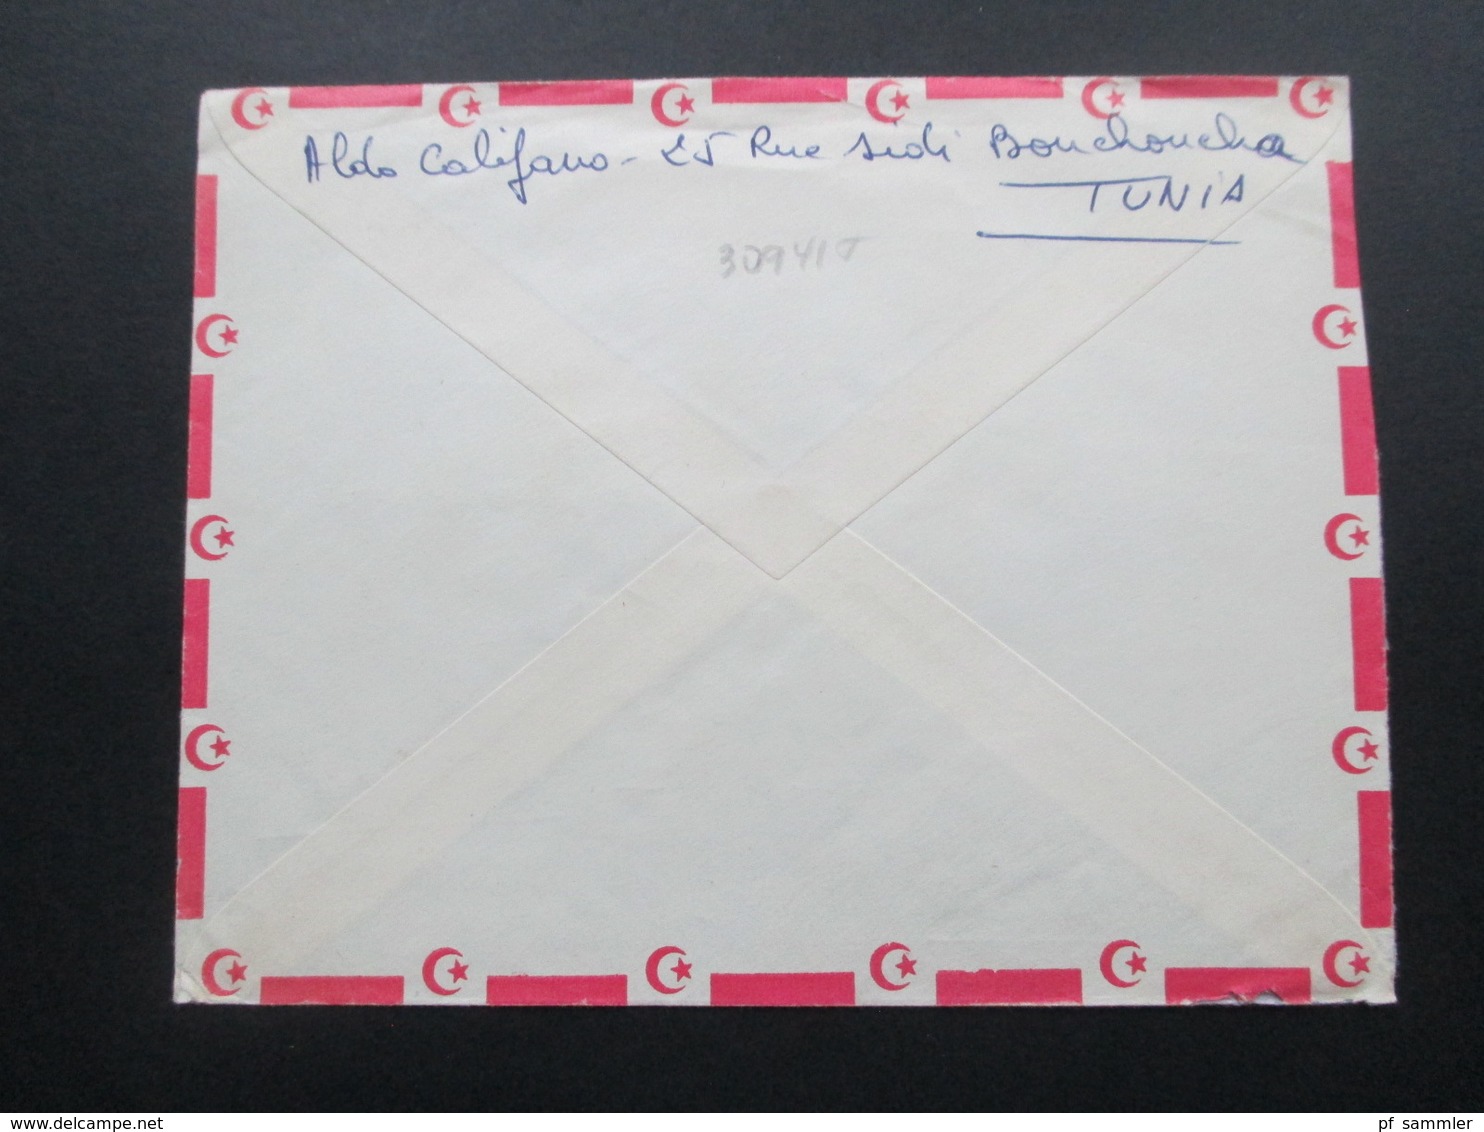 Tunesien 1961 Luftpost / Air Mail Nach Lexington USA Gesendet. Schöne MiF - Tunesien (1956-...)